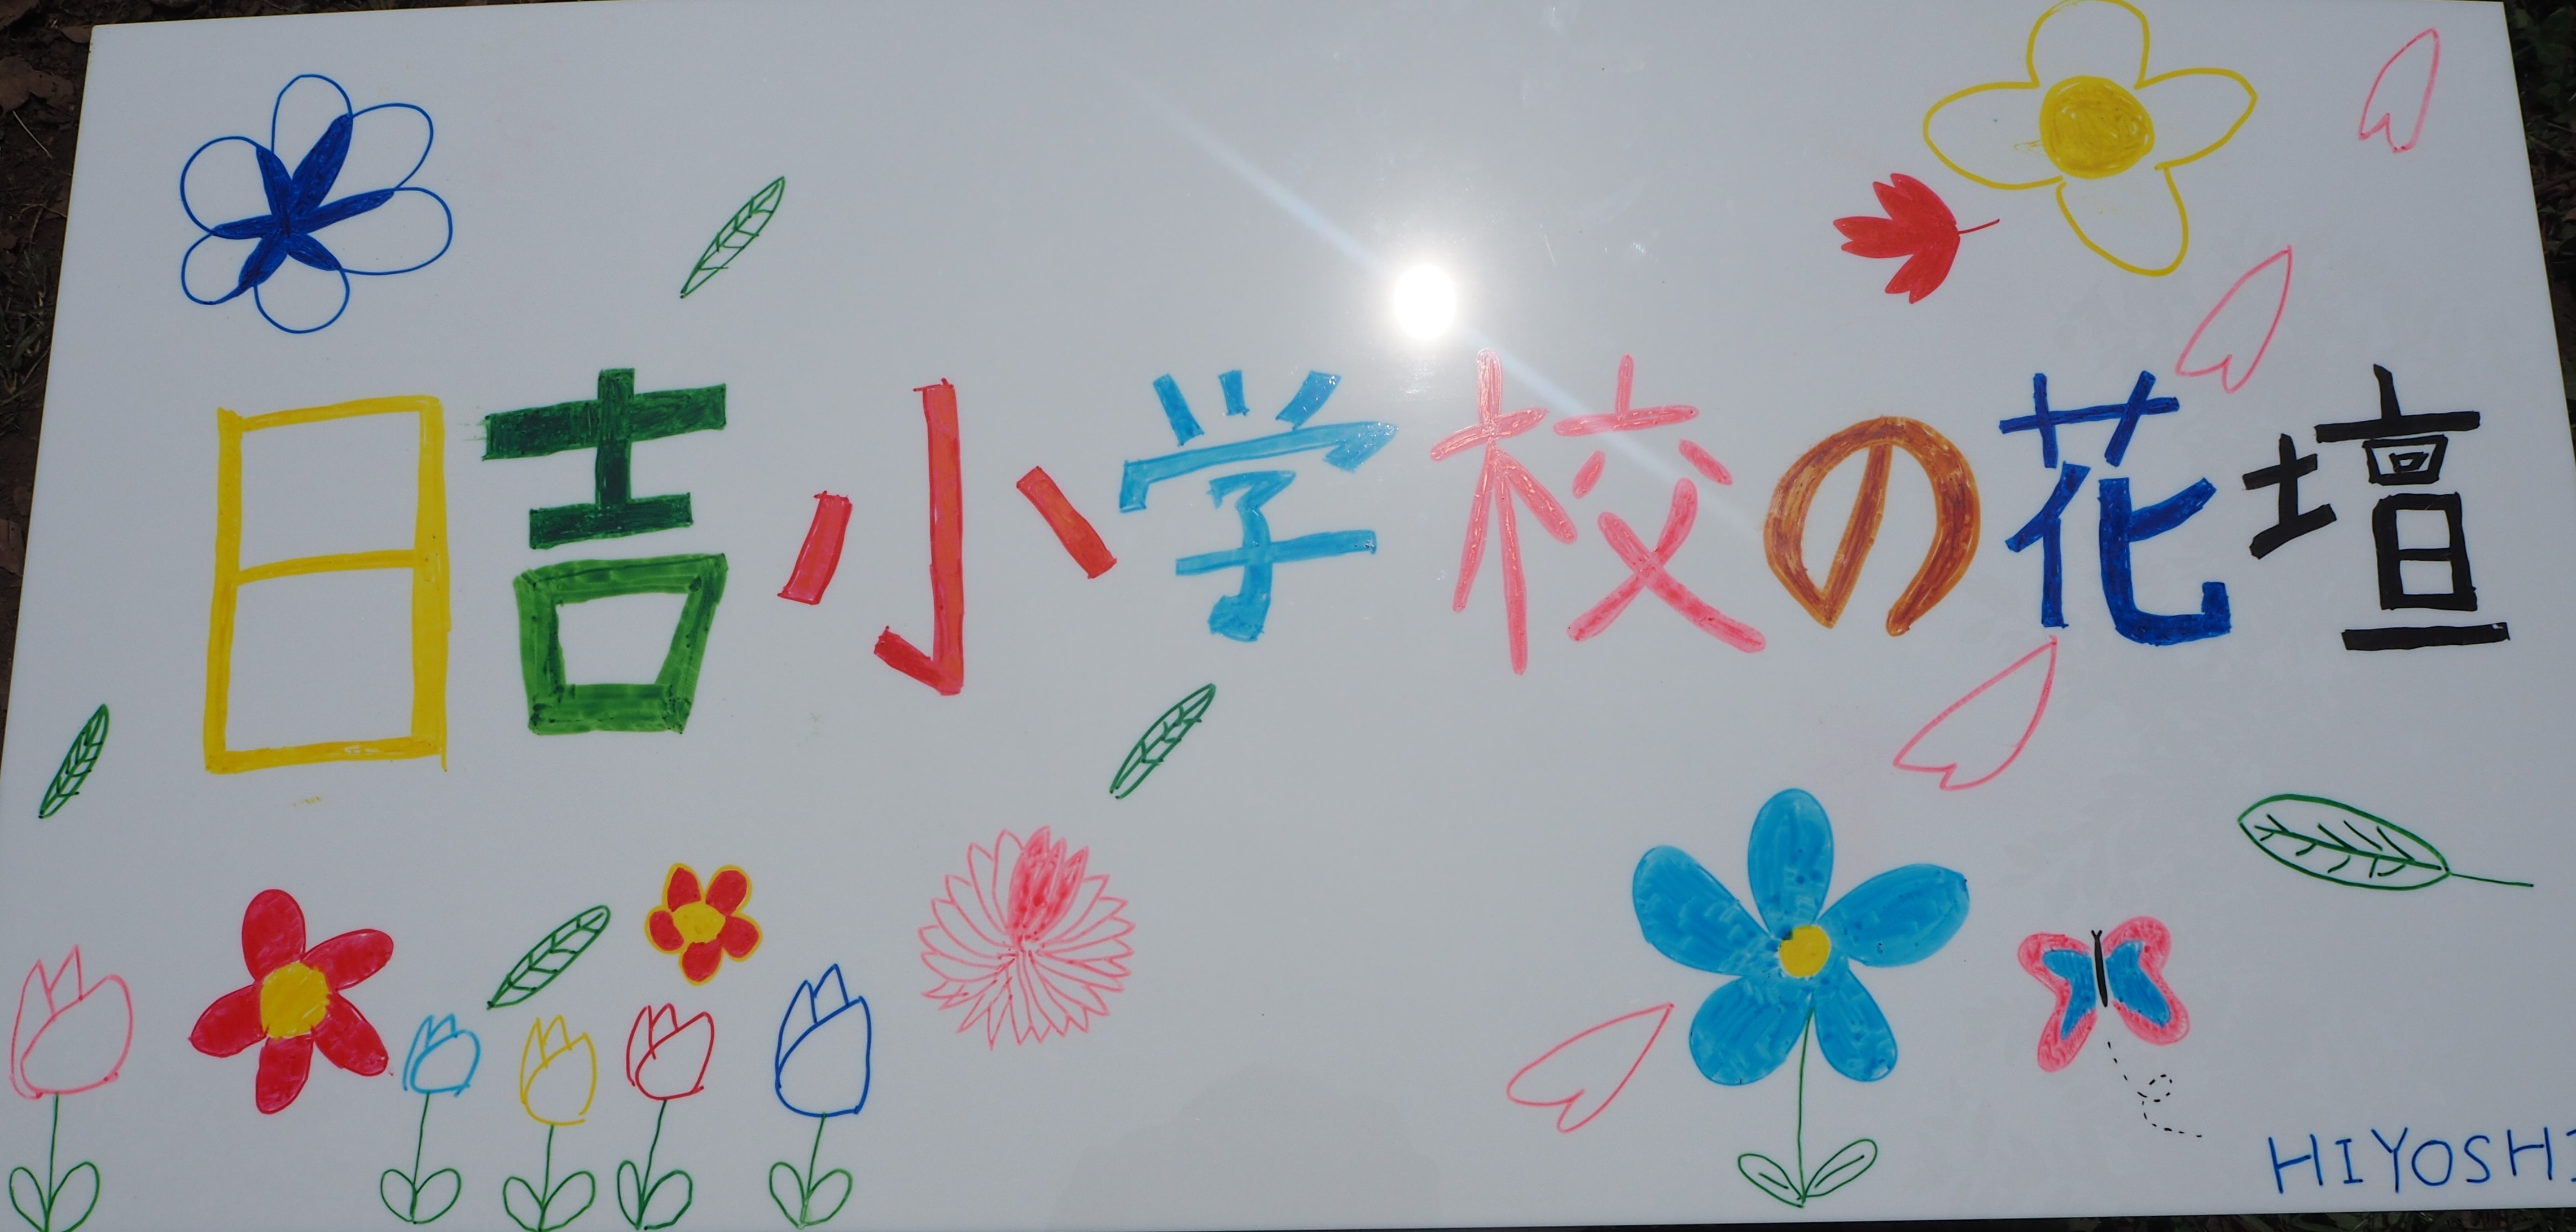 日吉小学校が作製した手描きオリジナル看板